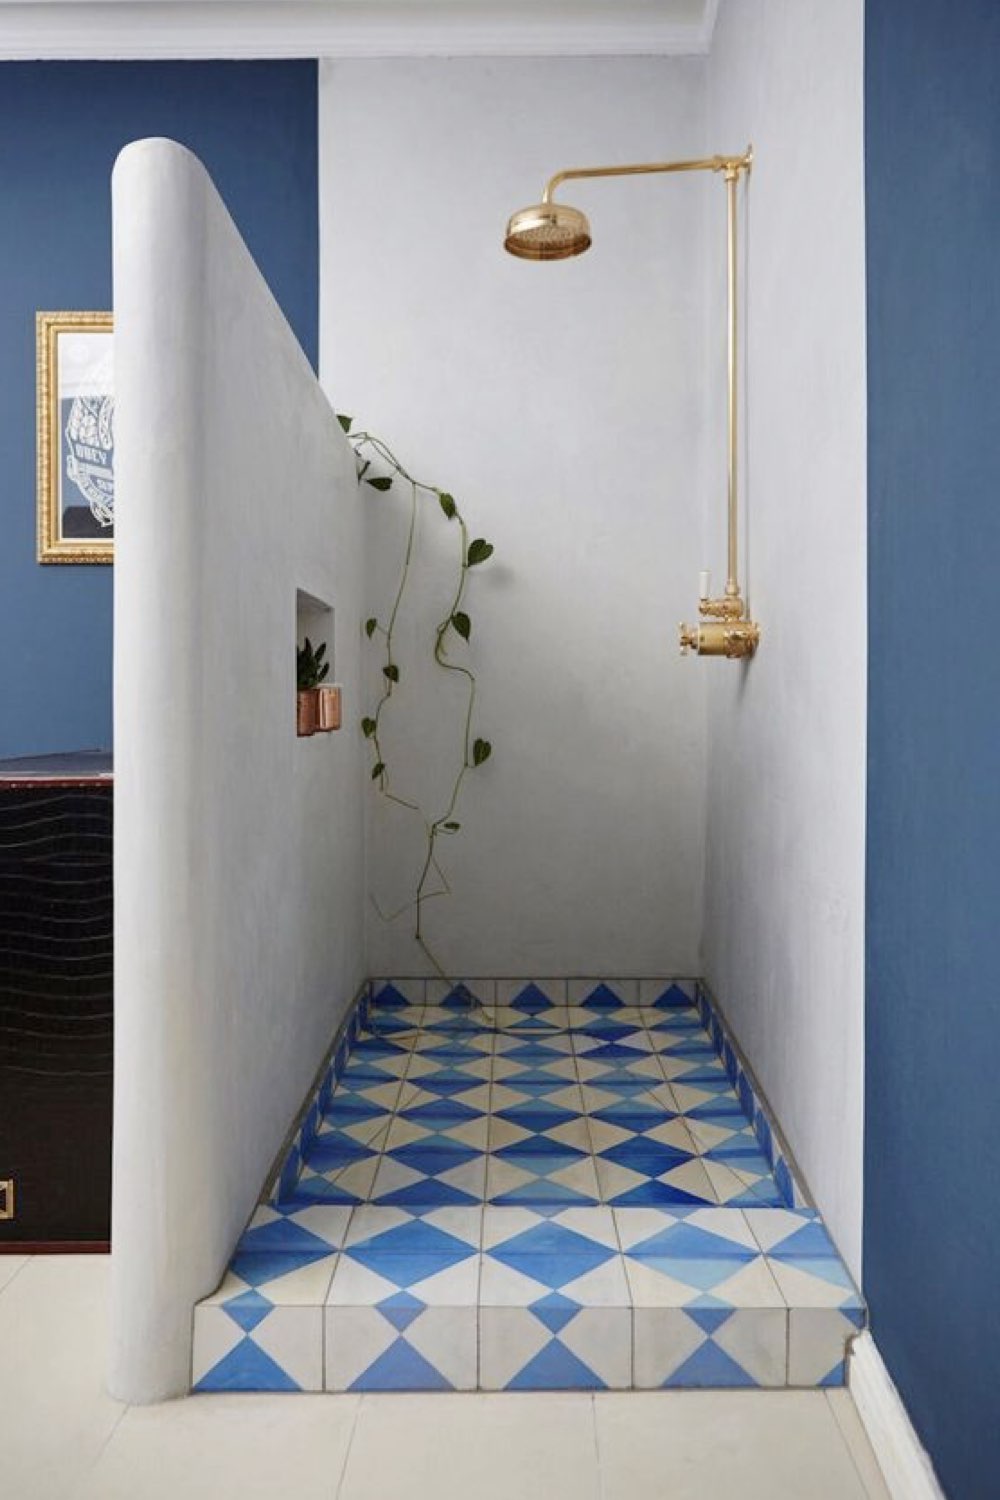 salle de bain douche deco detente bleu et blanc esprit méditerranéen demie cloison chic vacances repos 